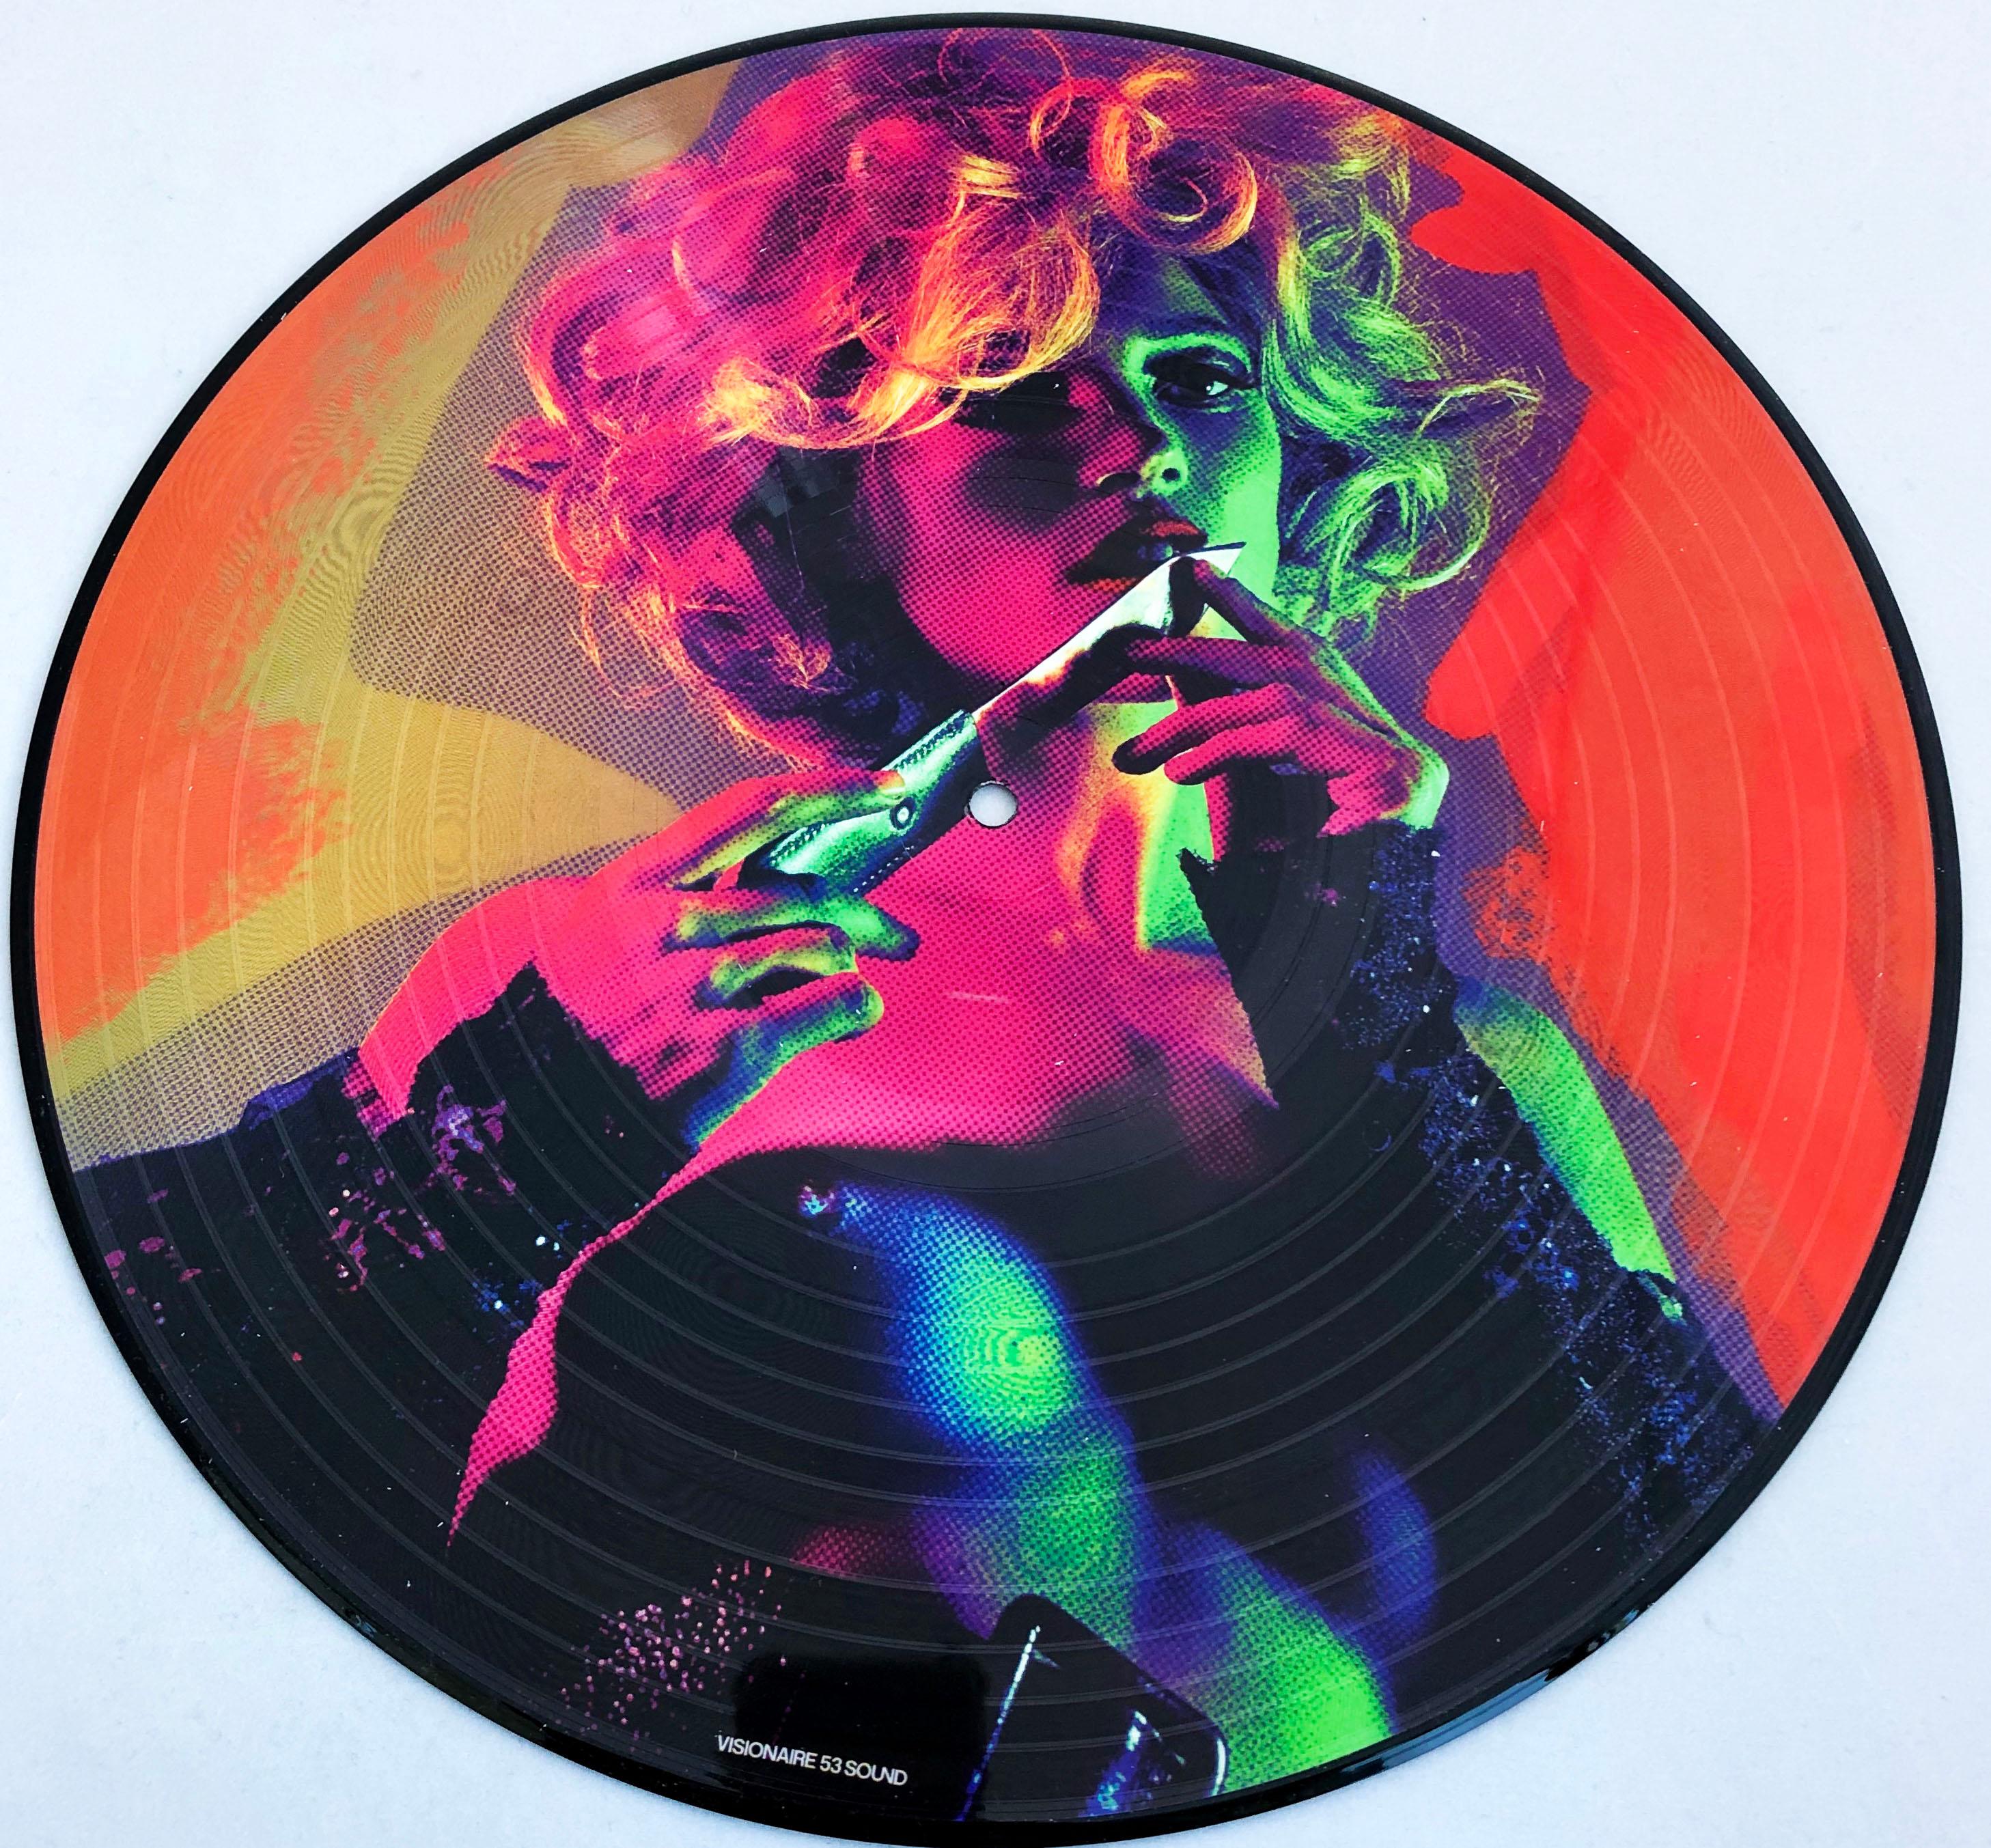 Kate Moss Vinyl Record Art Mert Alas and Marcus Piggott (Mert and Marcus)  - Pop Art Photograph by Mert Alas and Marcus Pigott 